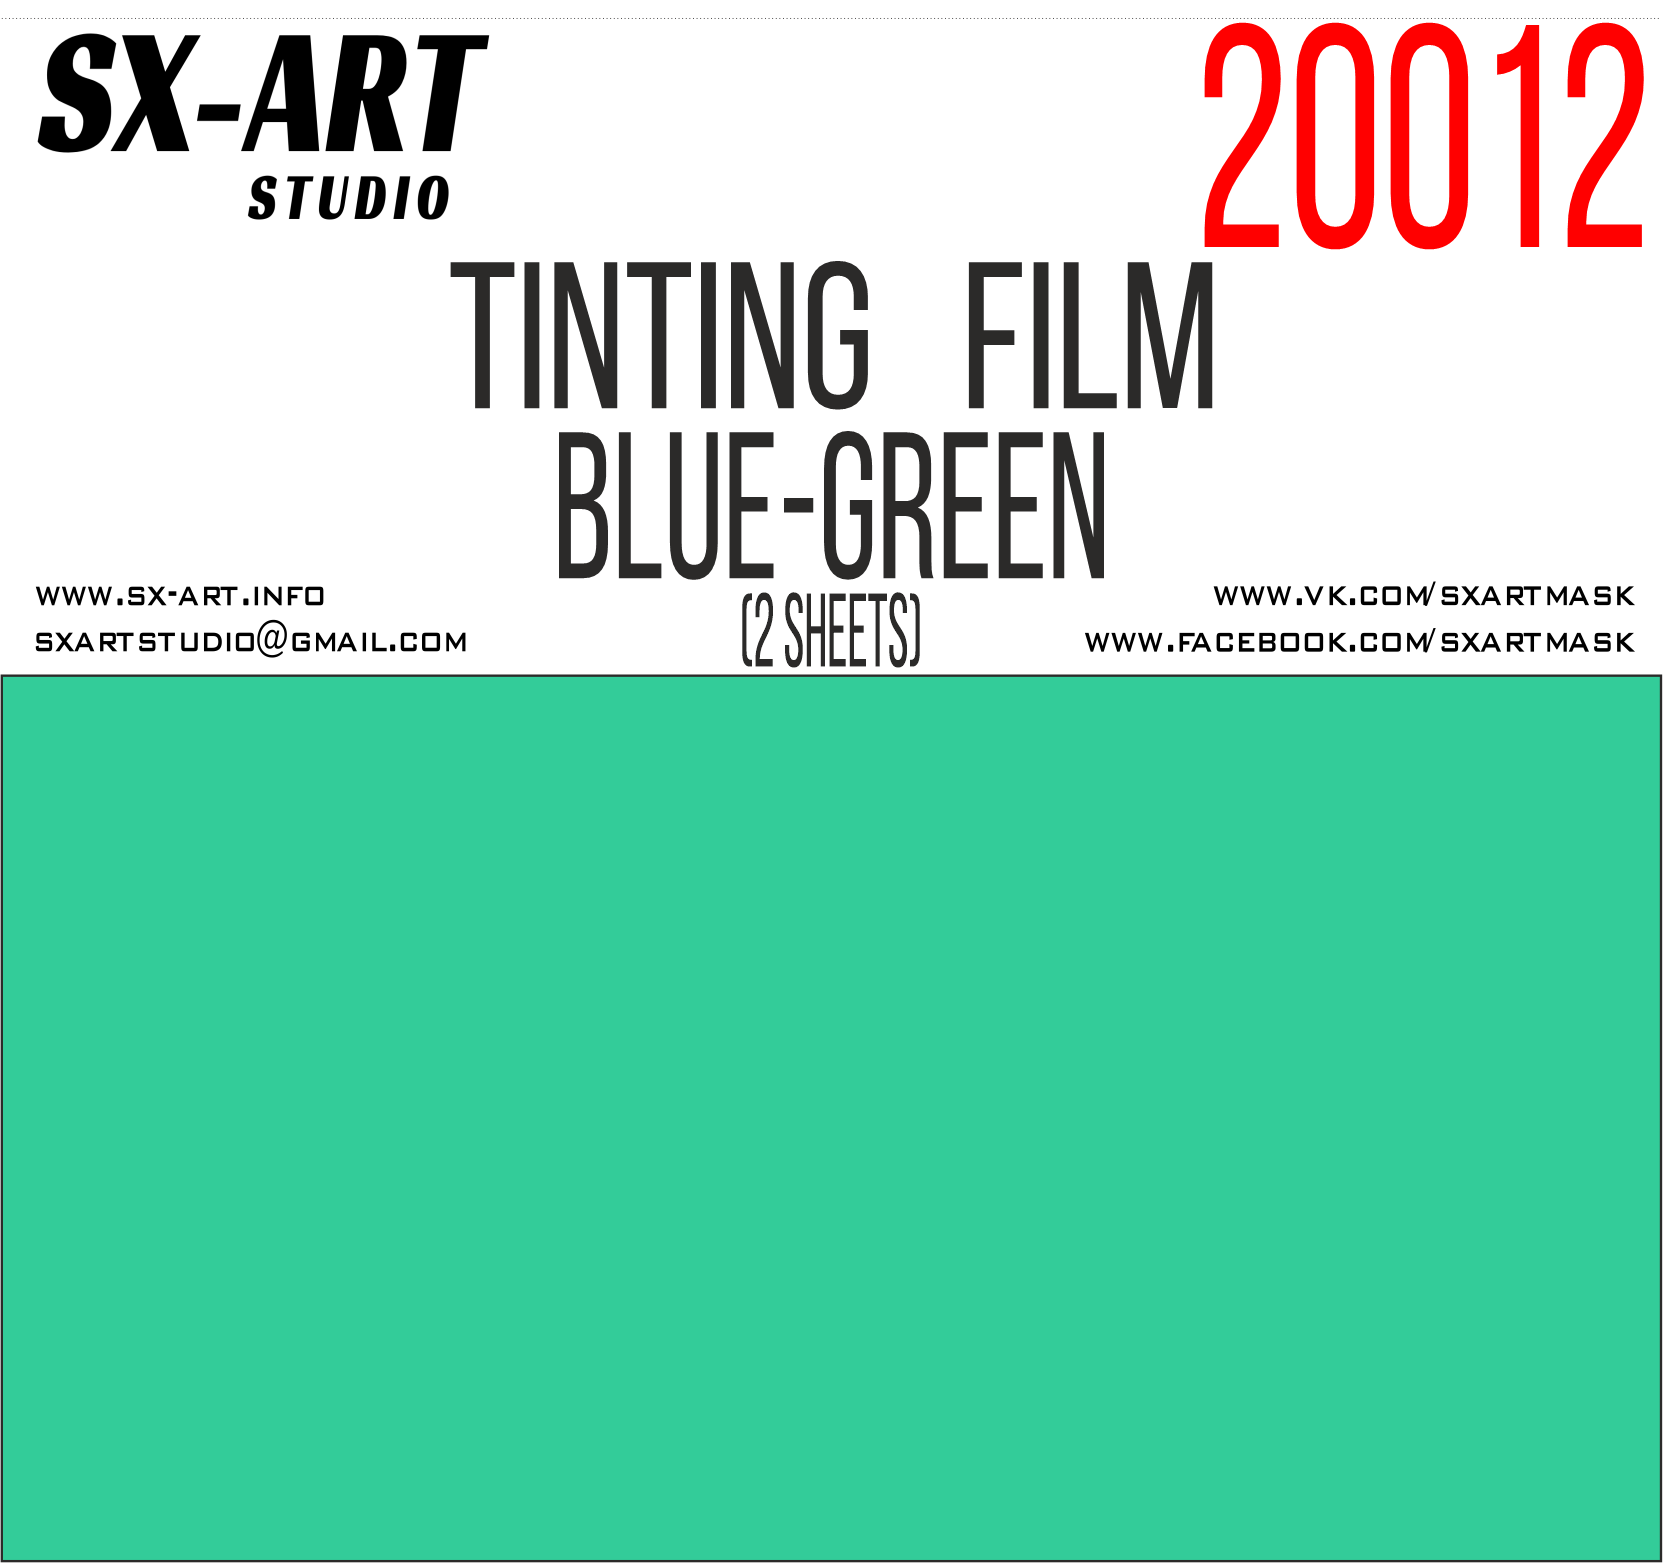 Blue-green tinting film 140x200 (2 sheets) (SX-Art)